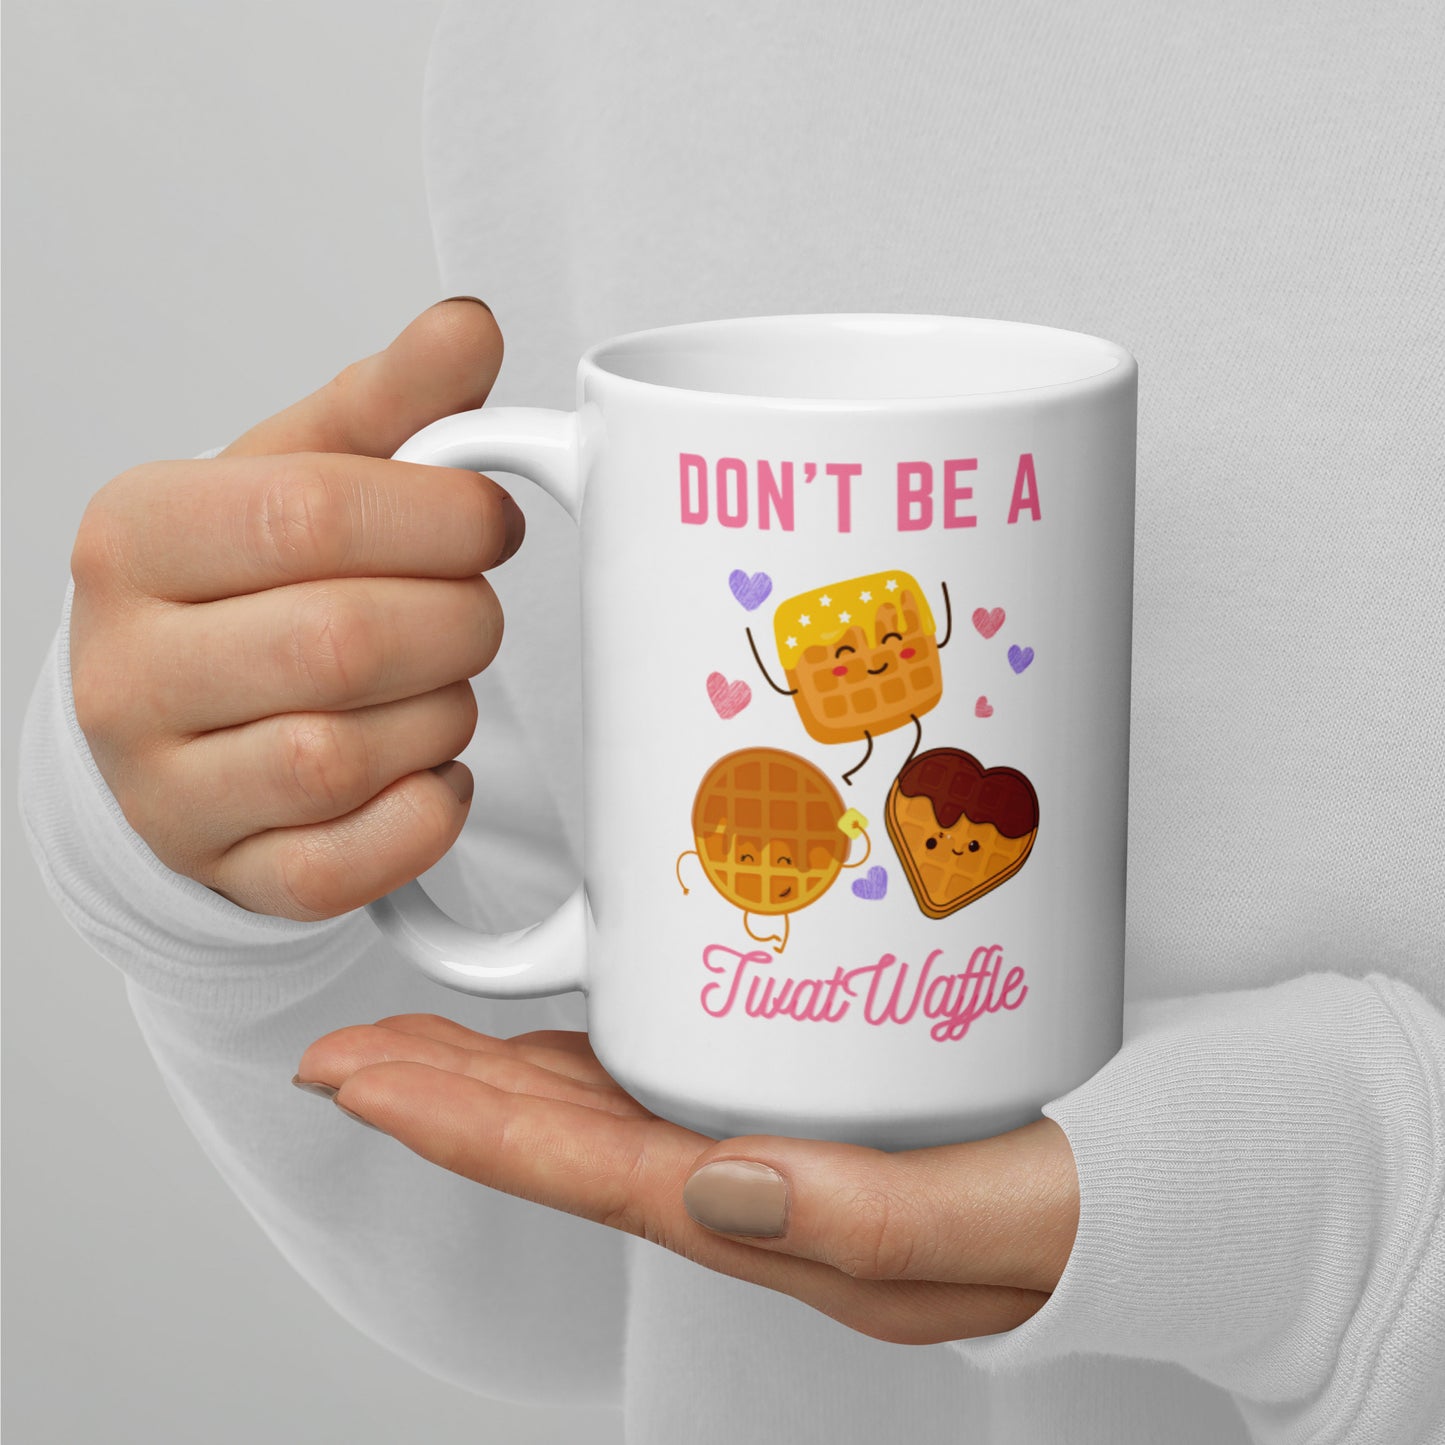 Don’t be a Twat-Waffle- White glossy mug